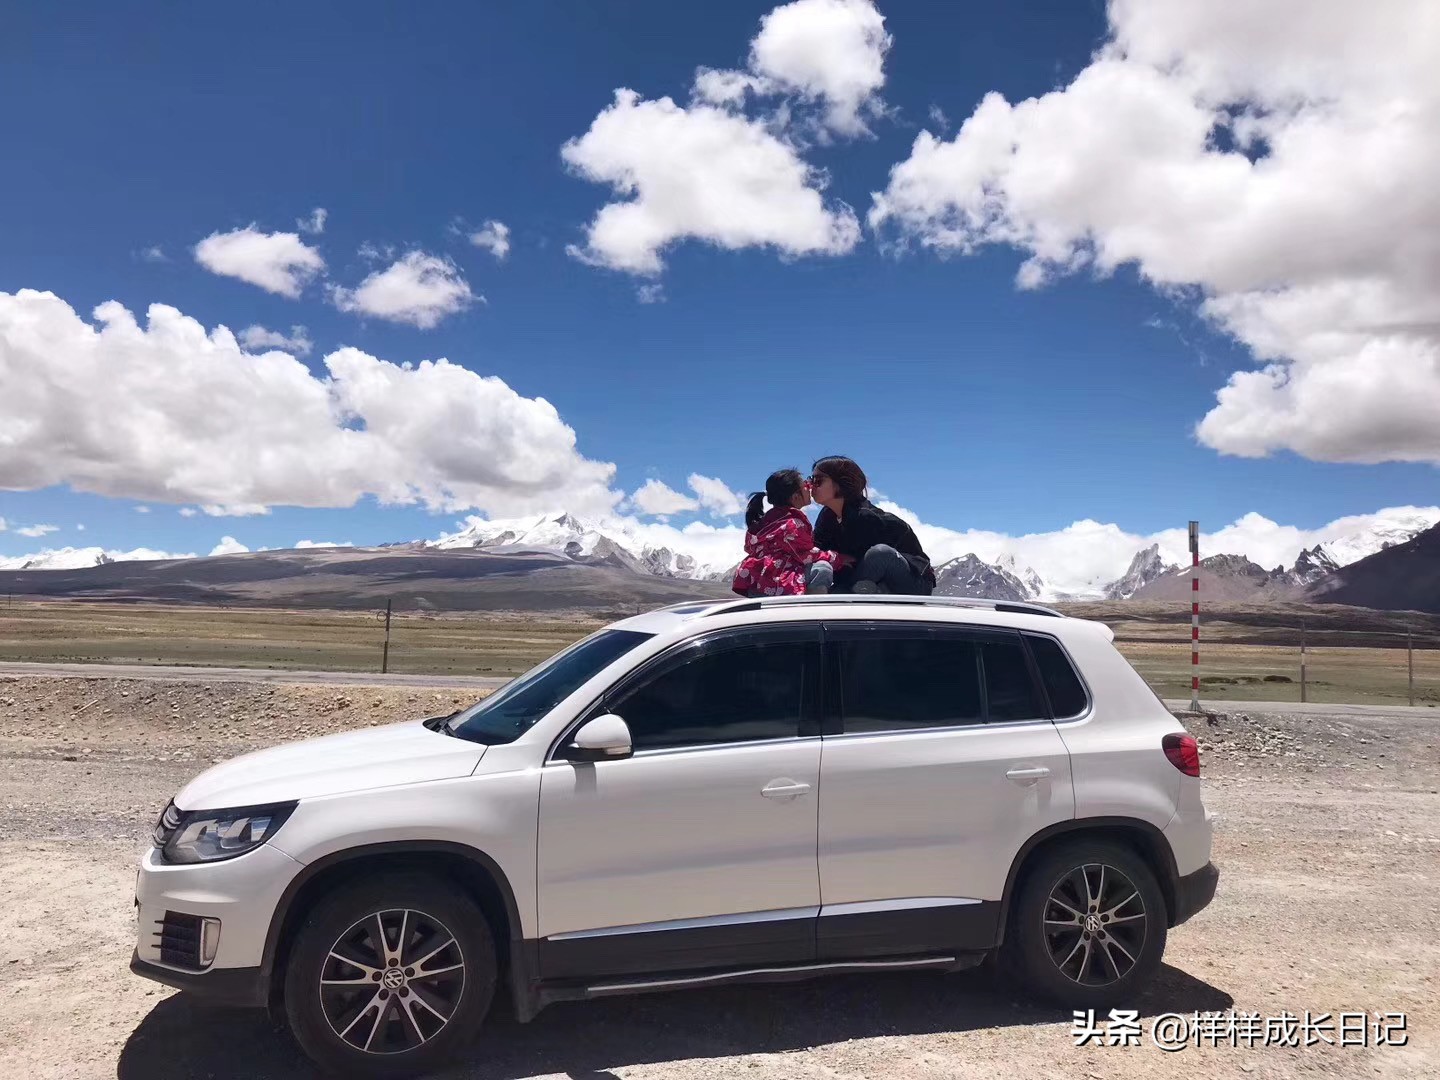 自驾去西藏，路上电瓶坏了，找人搭电开价400元，你愿意吗？